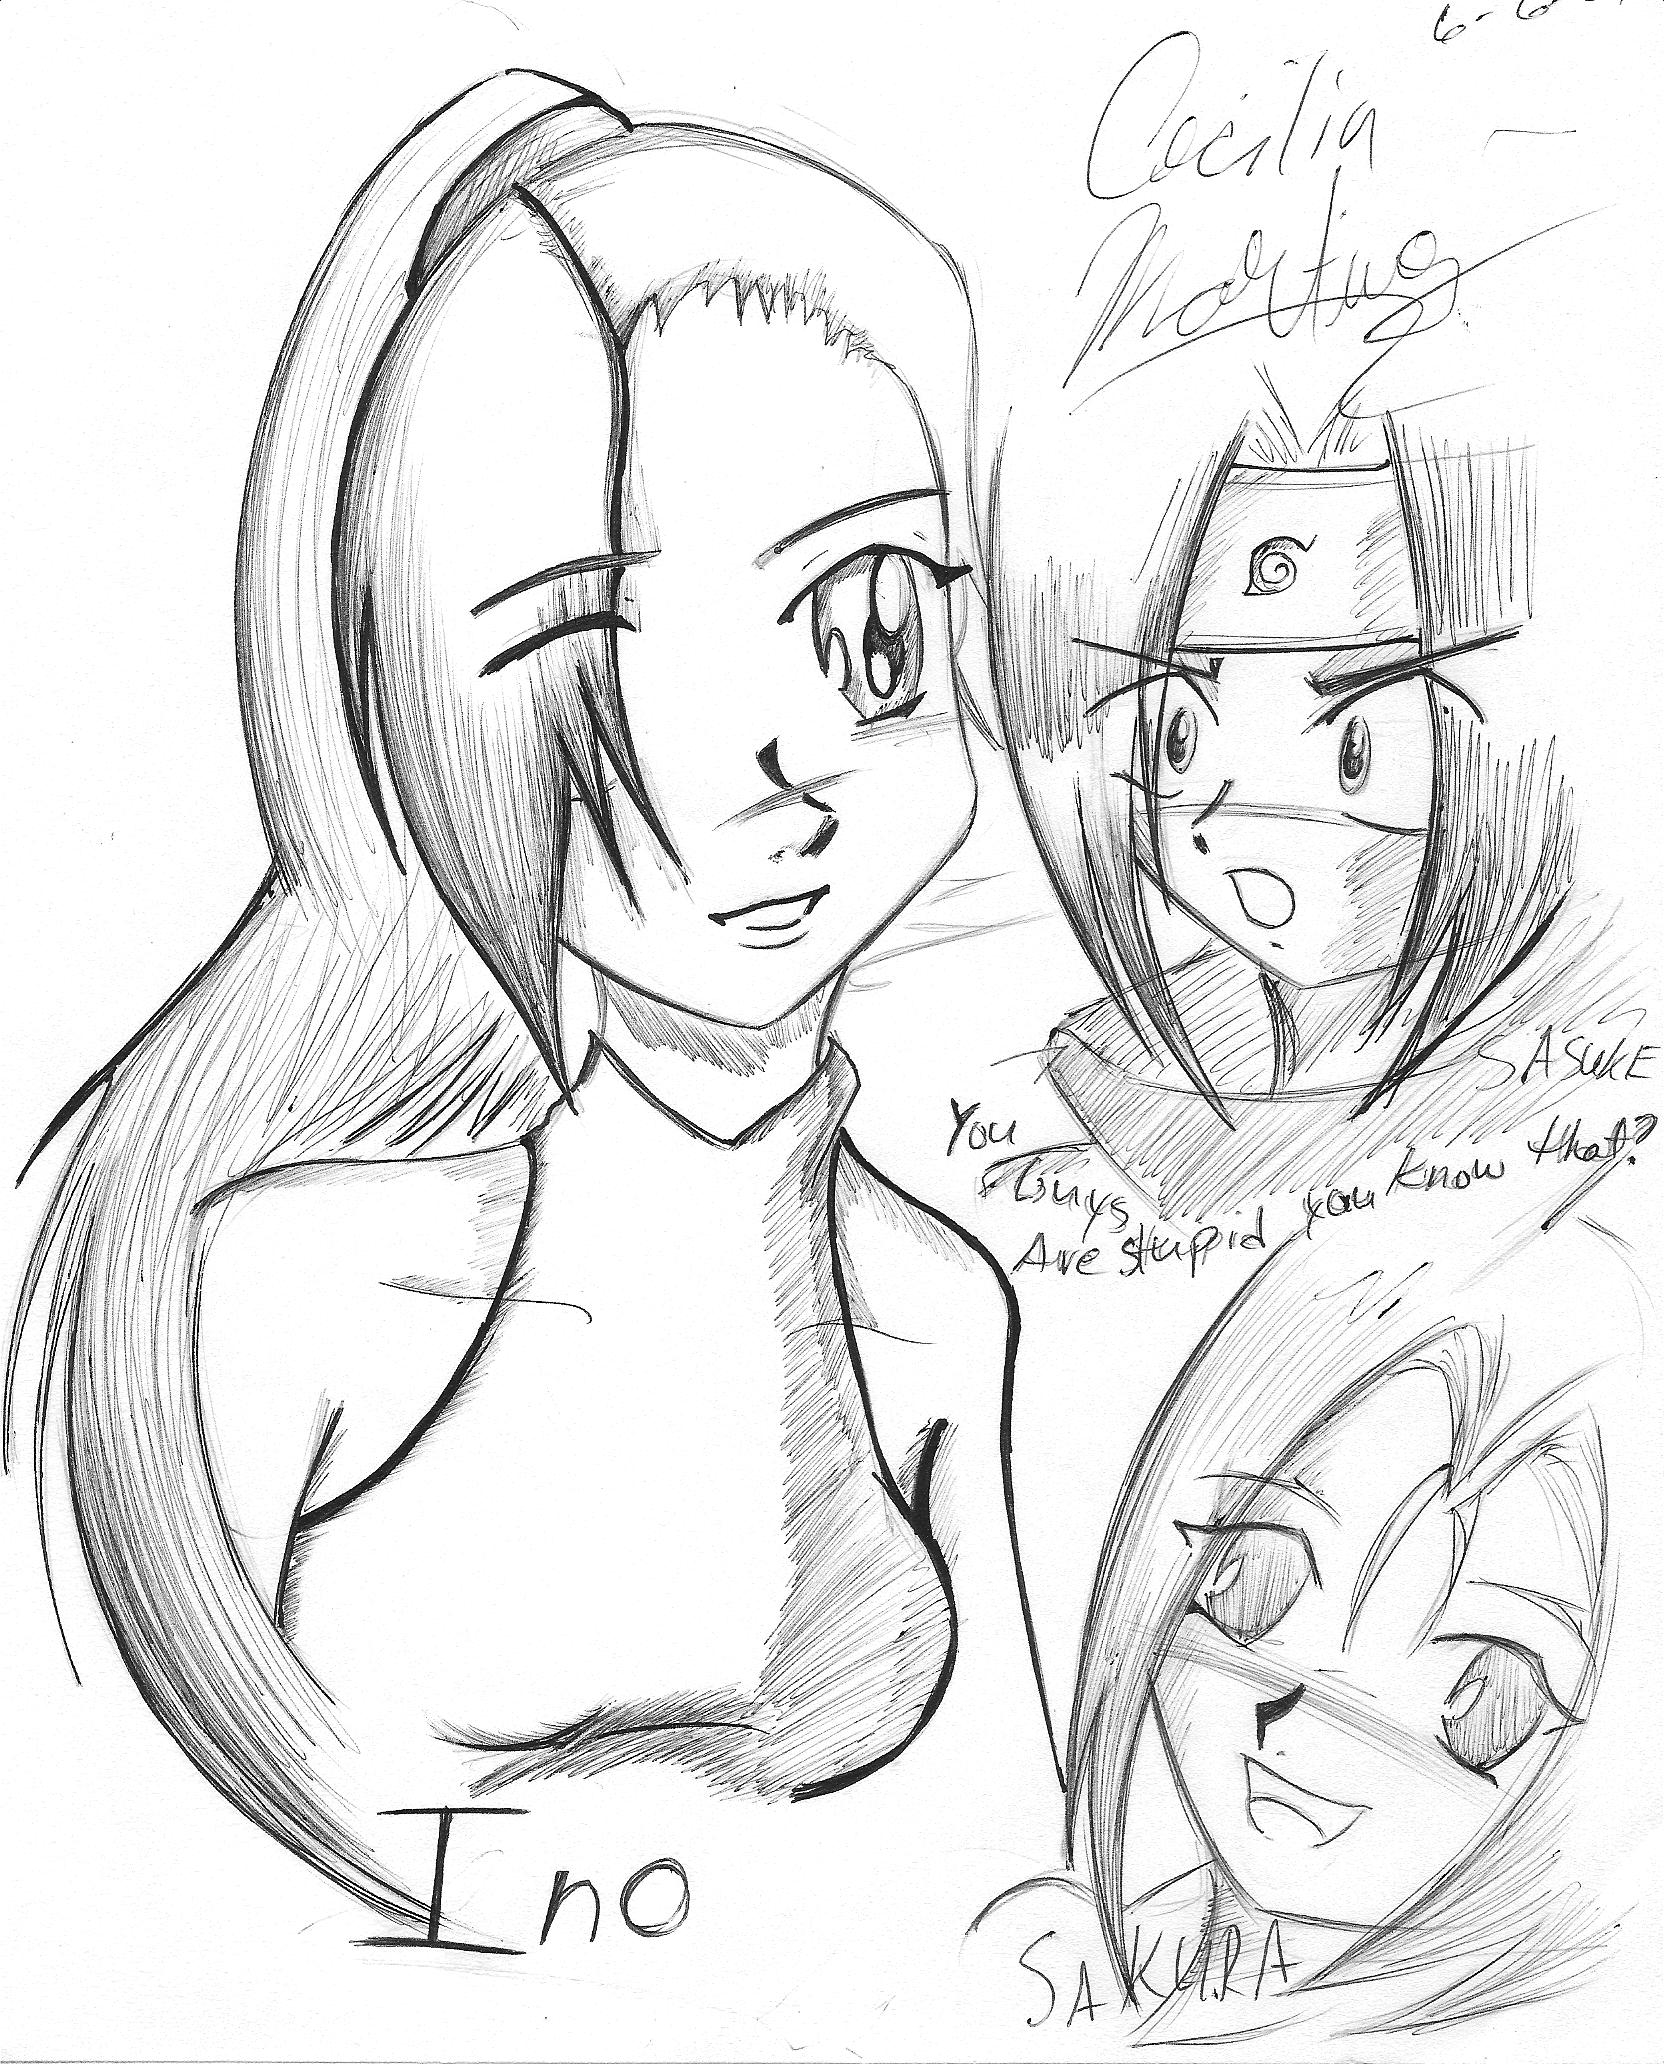 A weird drawing of Ino,Sakura,and Sasuke by Neopetgirl